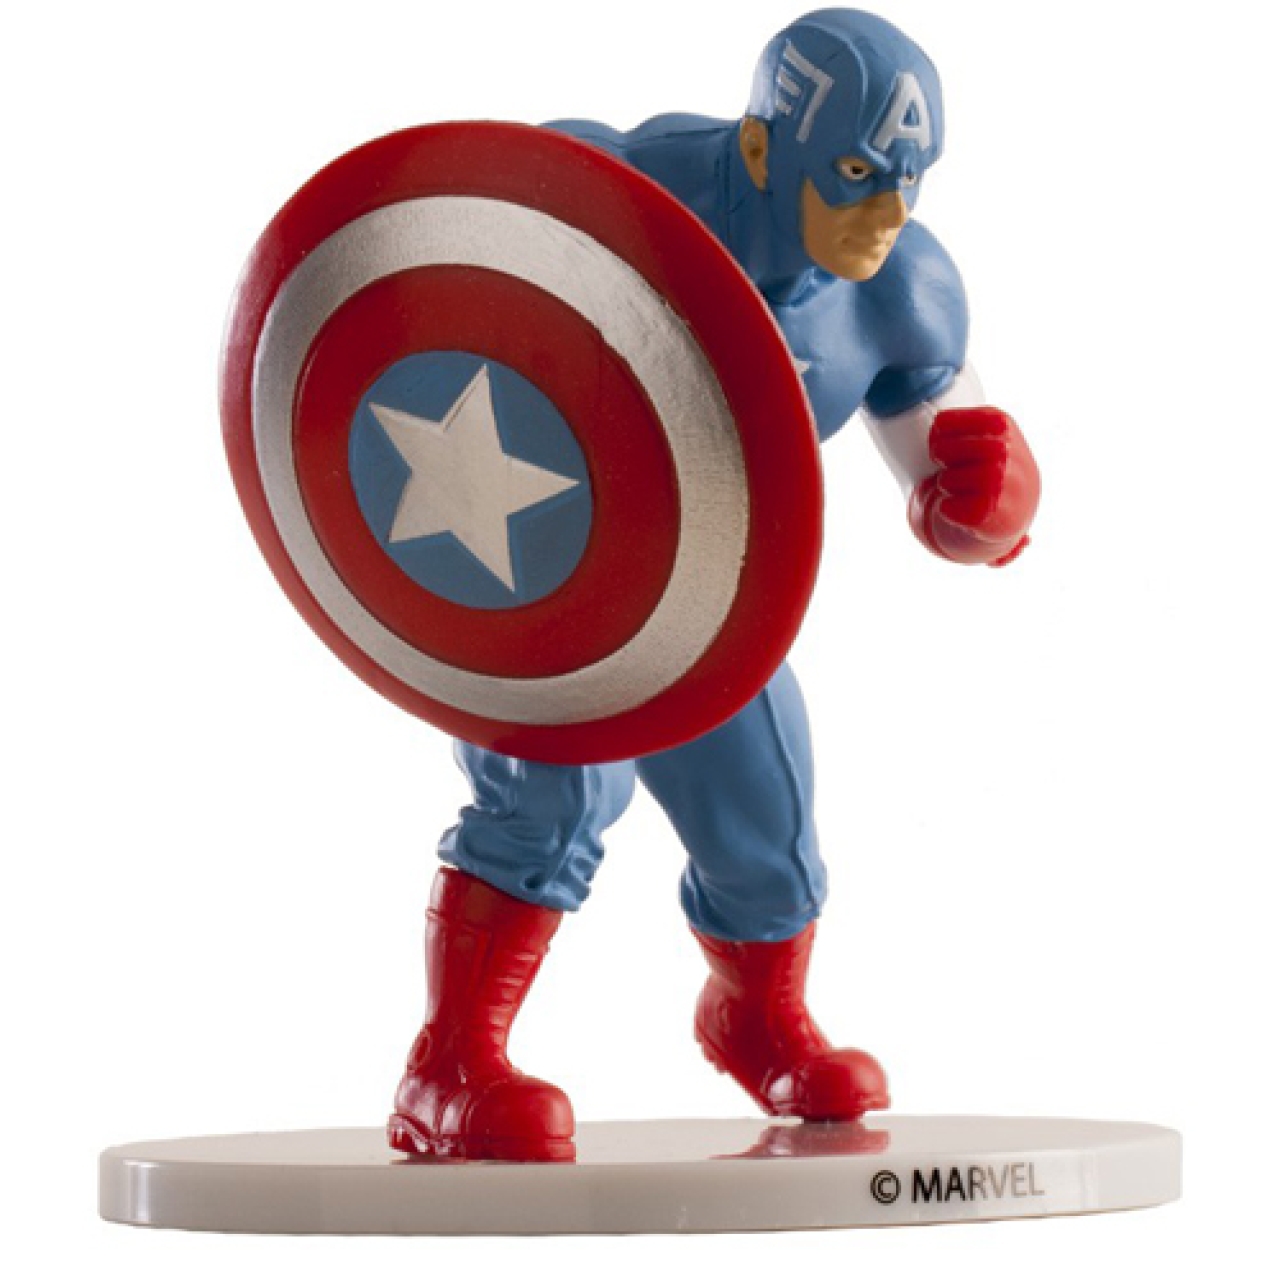 Tortenfigur "Captain America", 9 cm